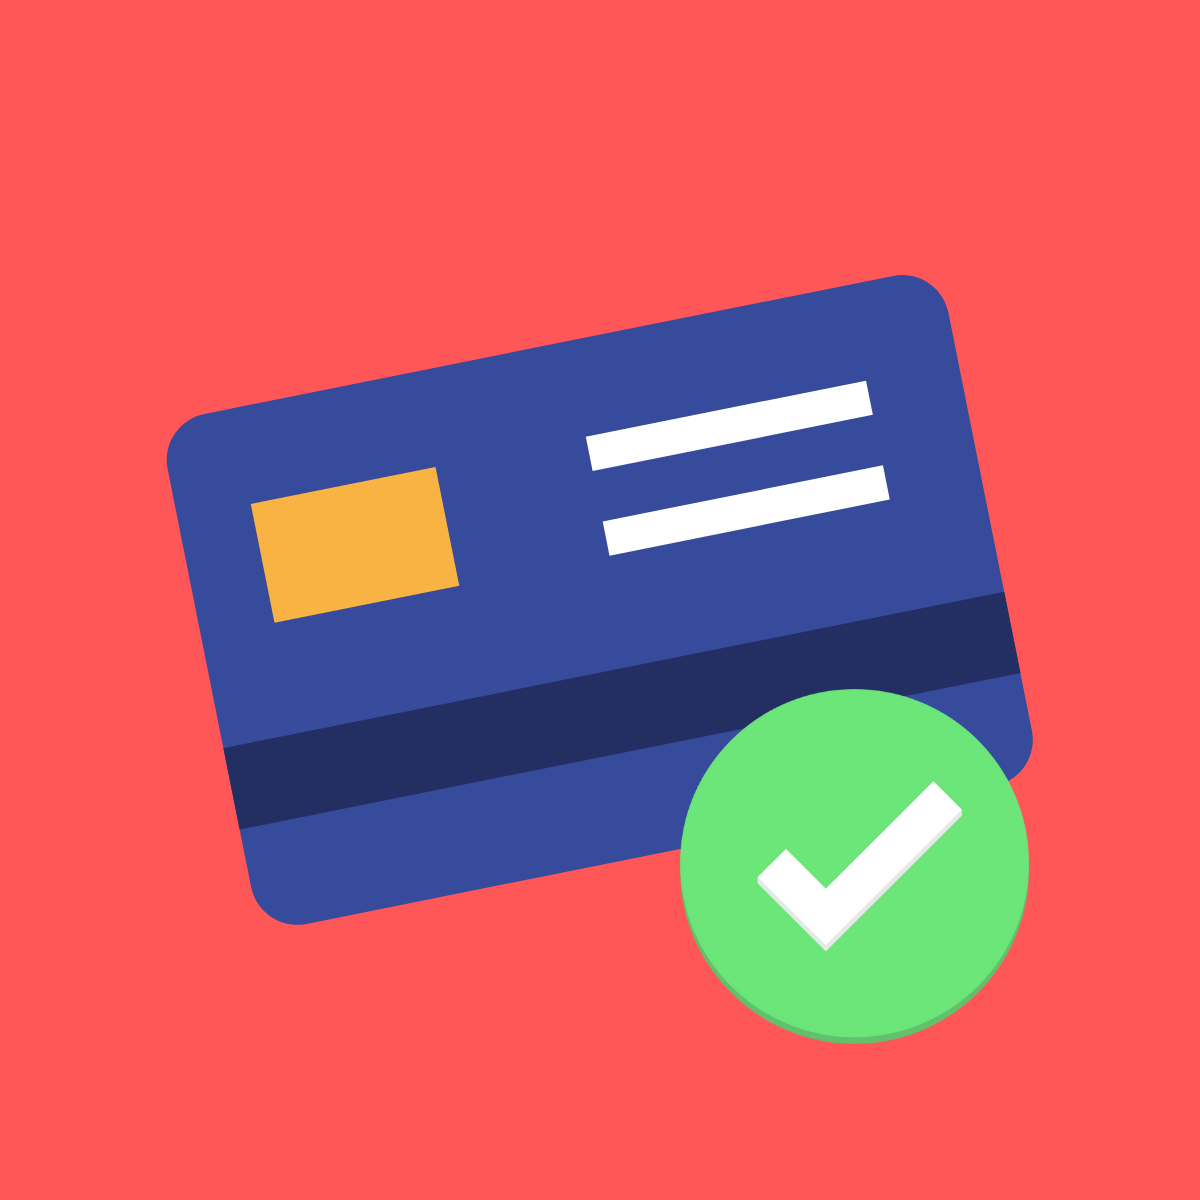 Quelle est la cote de crédit minimale requise pour obtenir une carte de crédit?